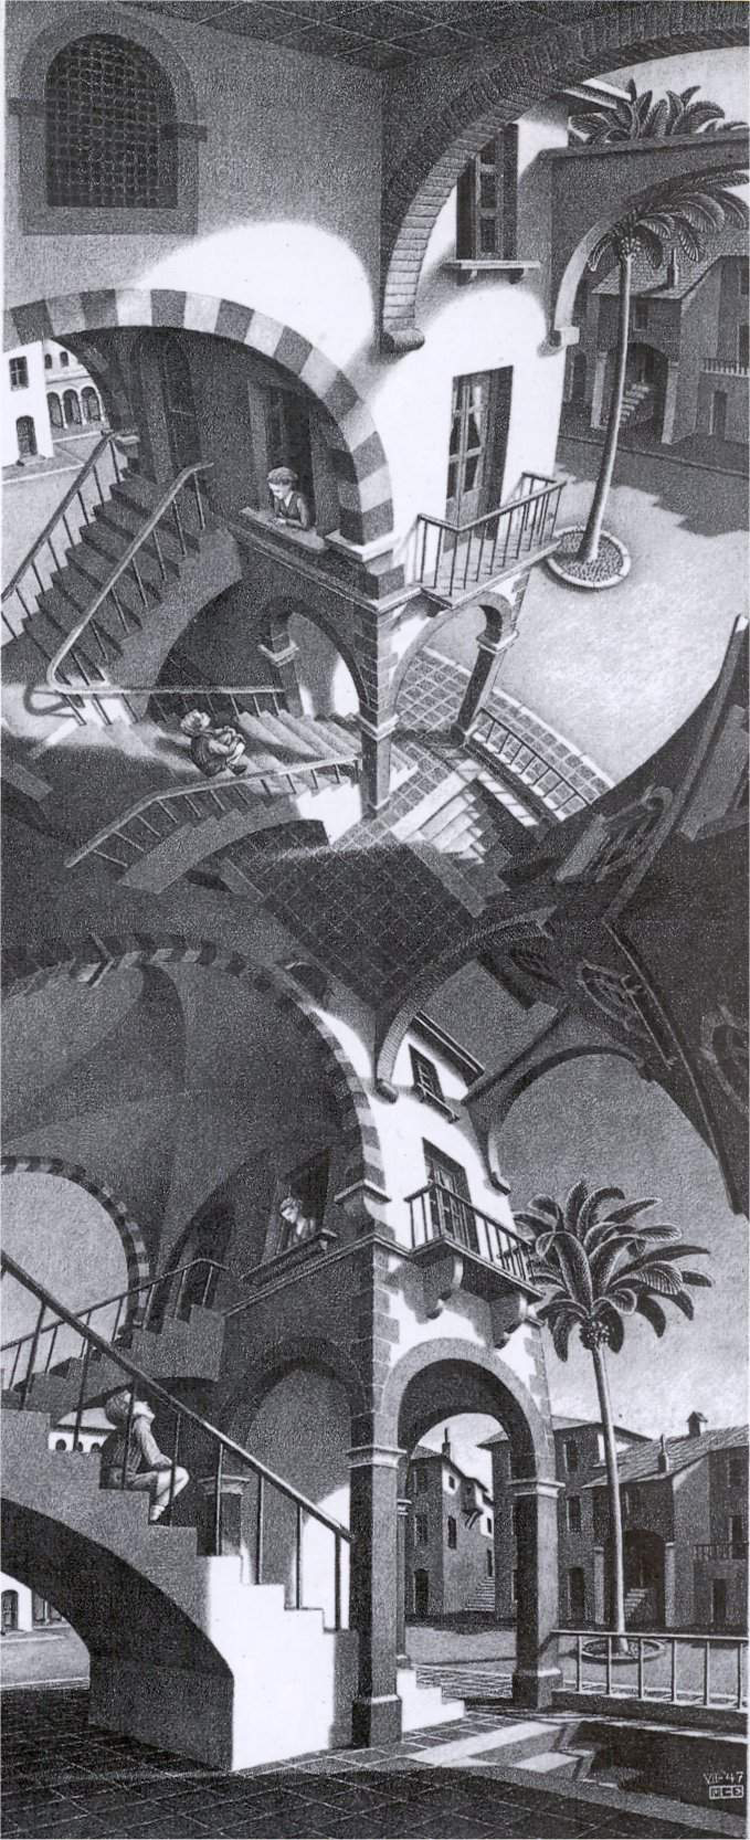 Escher, Up and Down, 1947